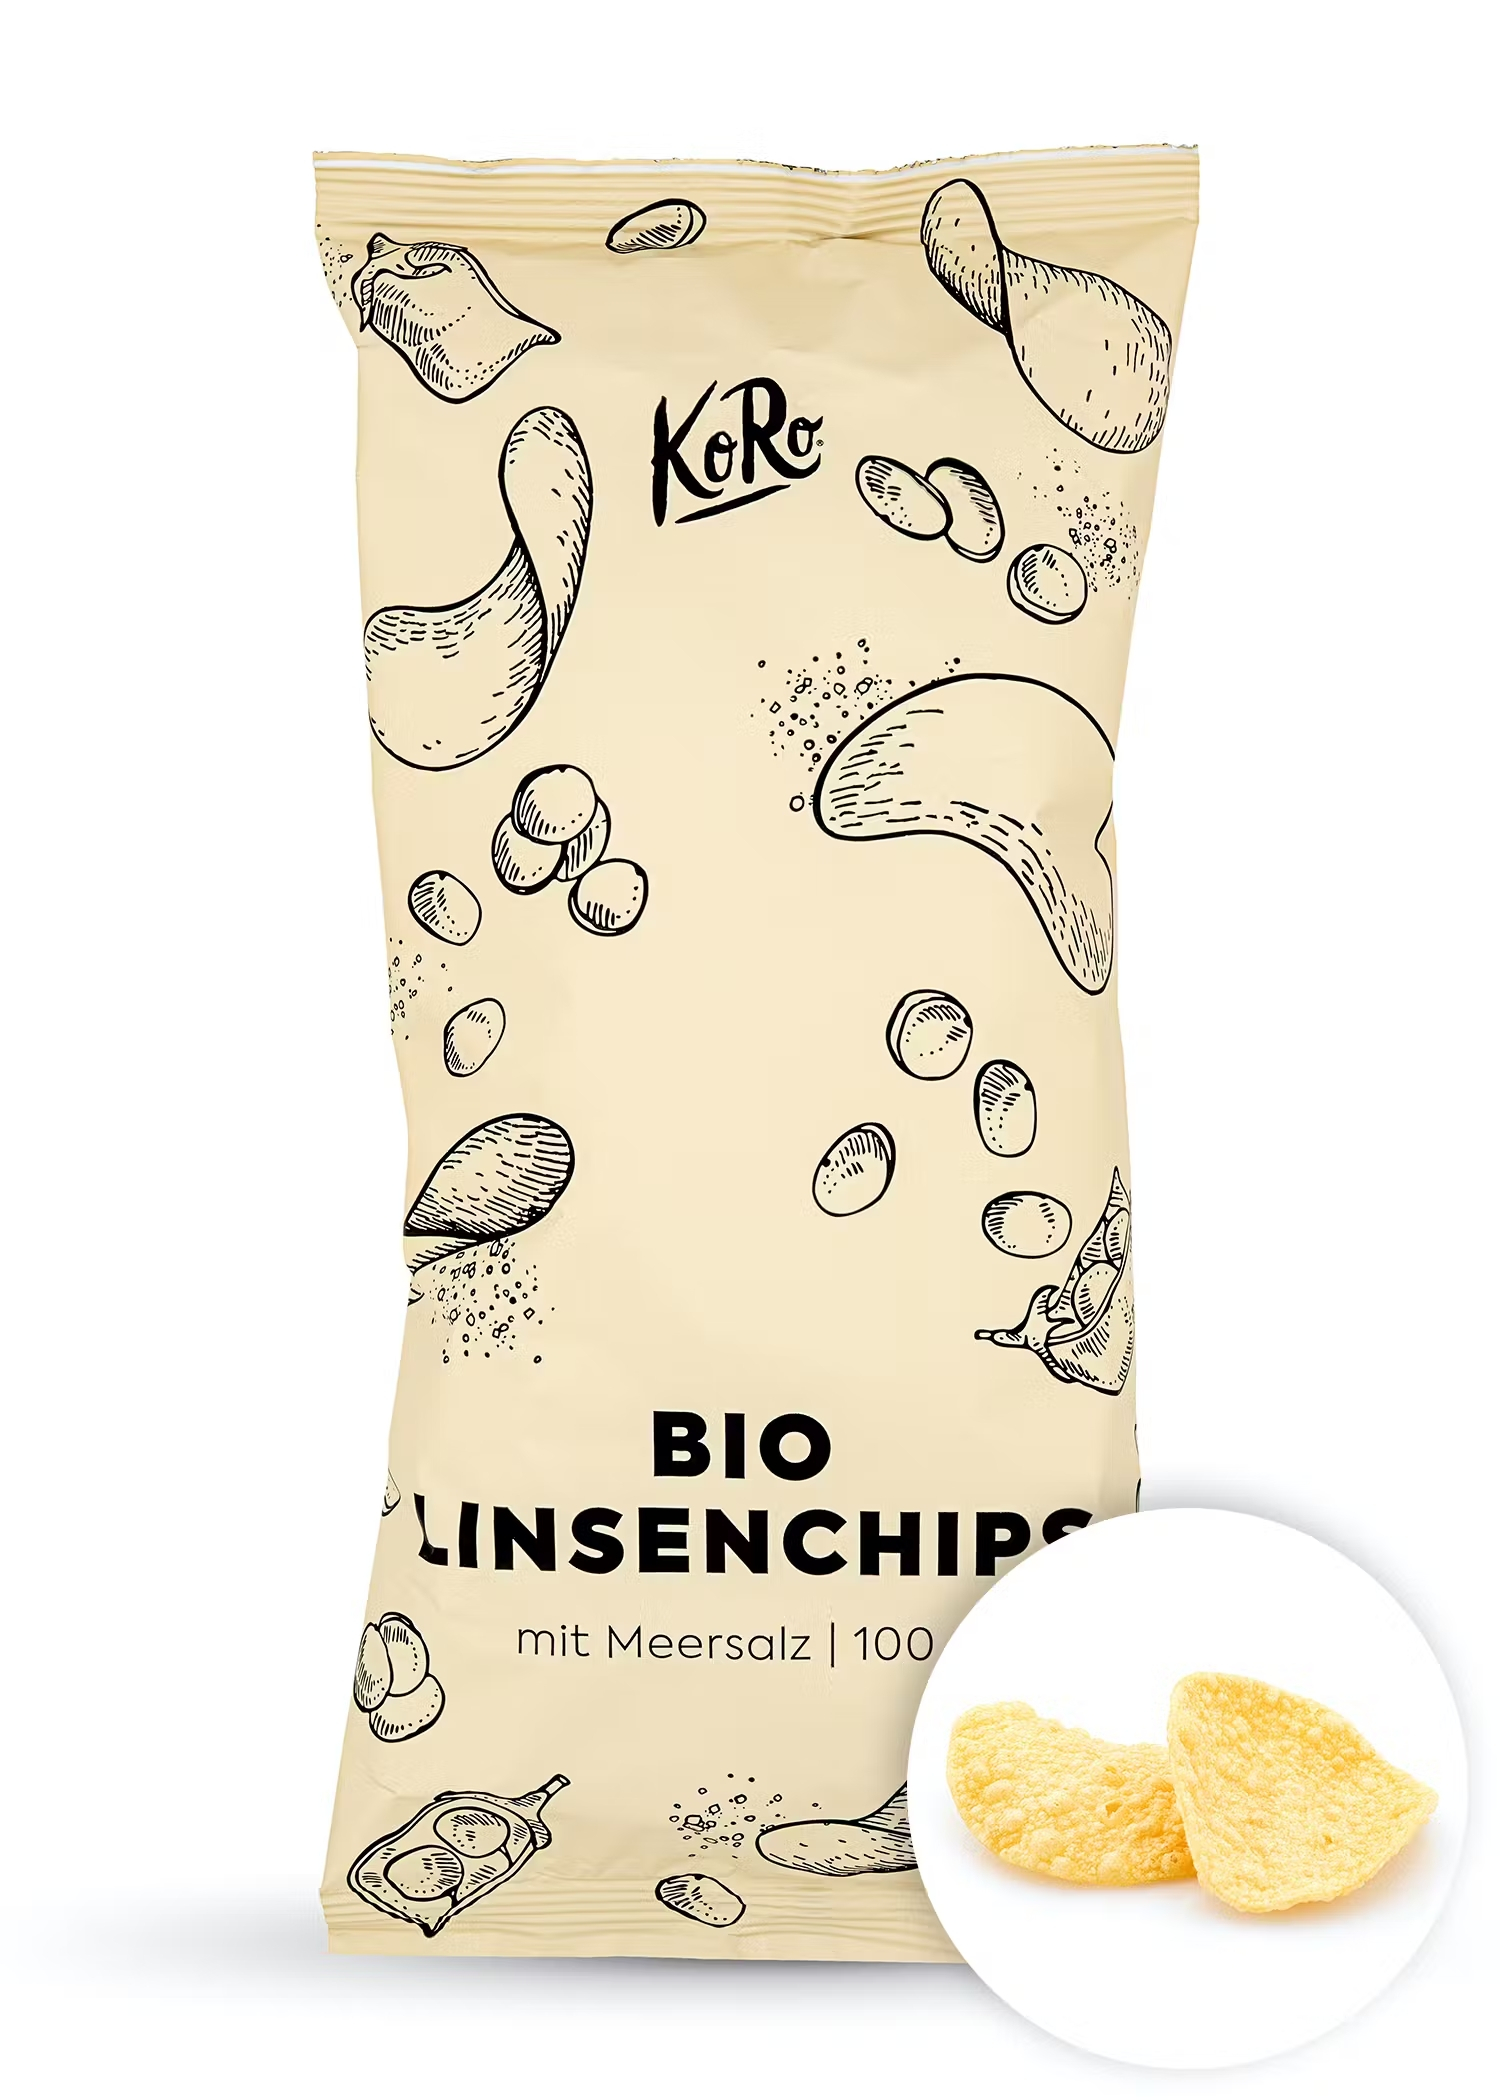 KoRo Bio Linsenchips mit Meersalz (100g)